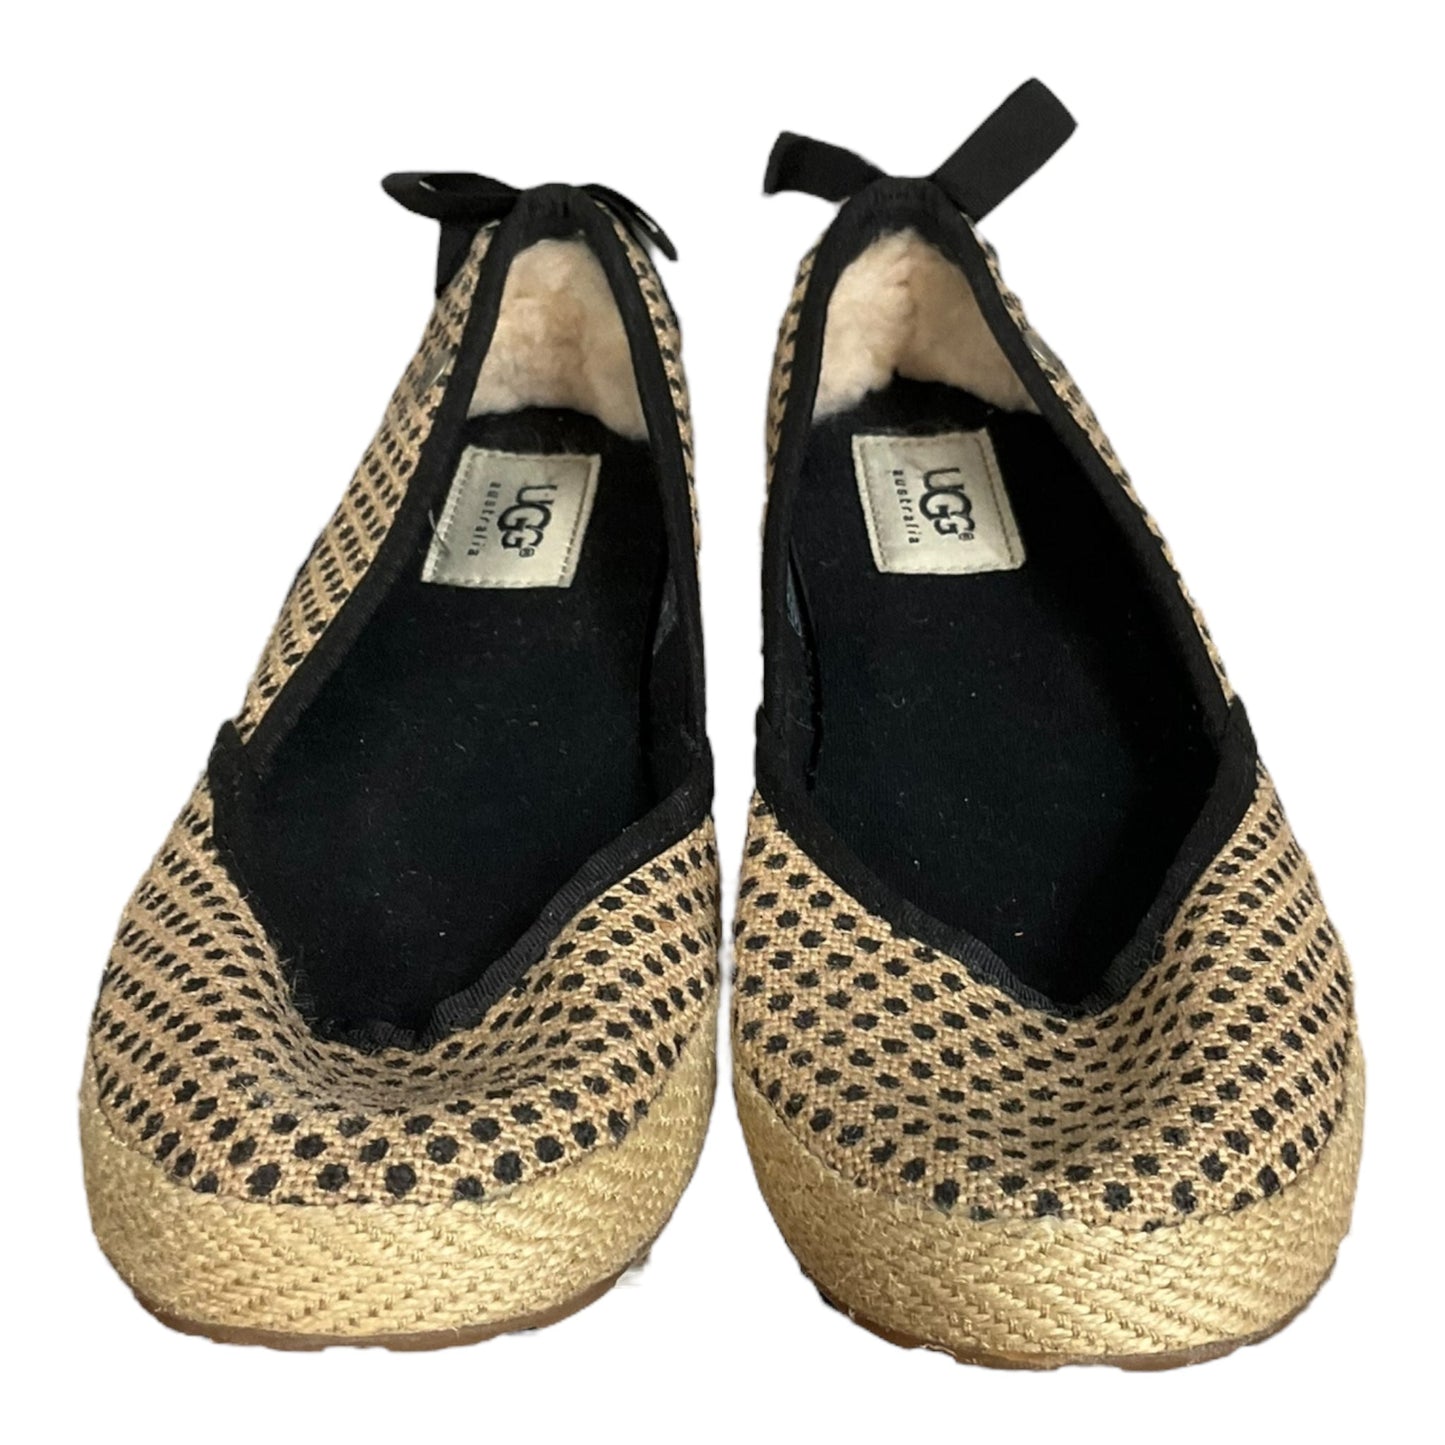 Polkadot Pattern Shoes Flats Ugg, Size 7